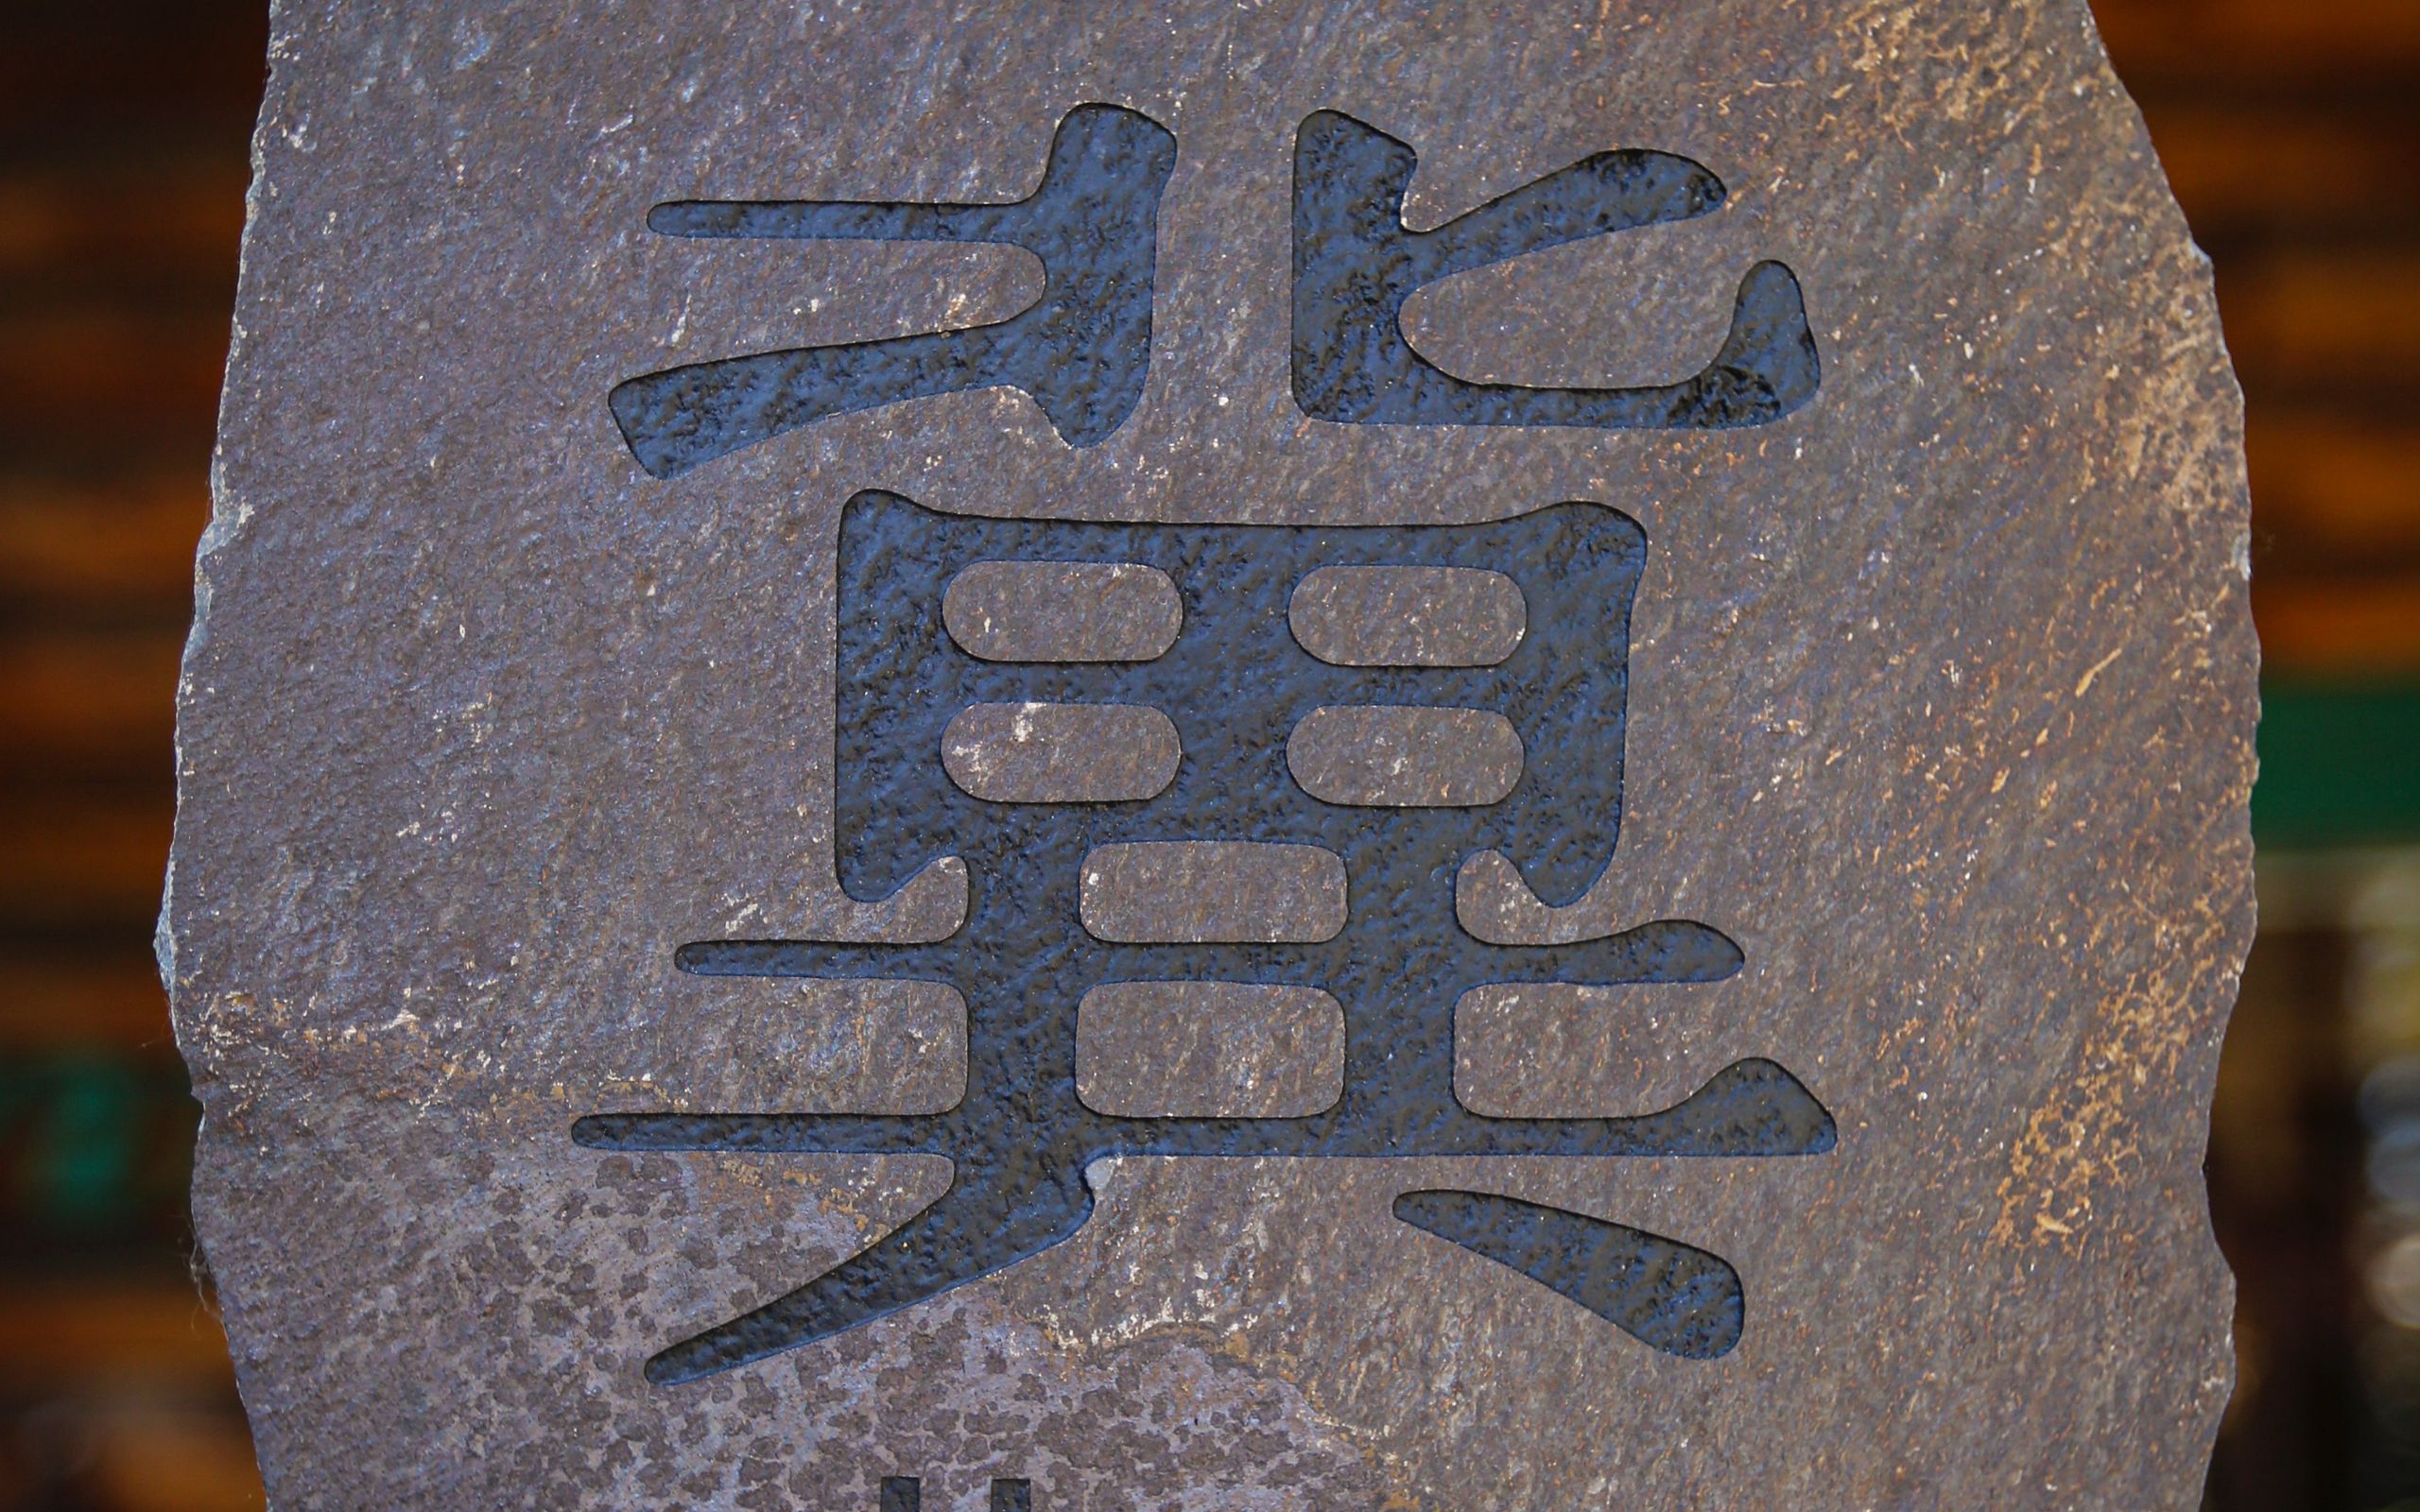 Китайские иероглифы